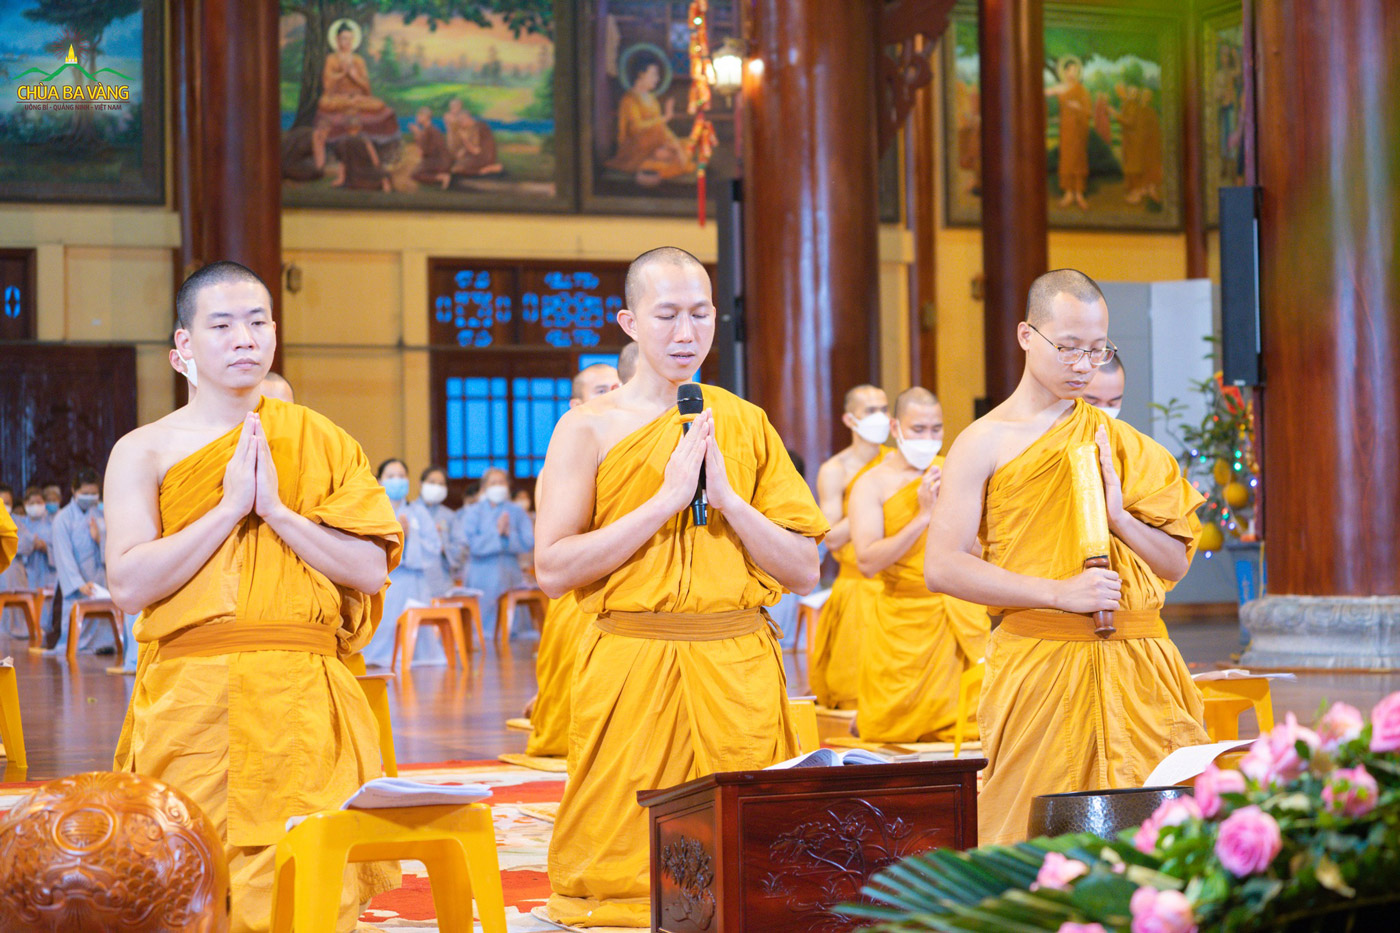 Tại ngôi Đại hùng Bảo điện chùa Ba Vàng, đúng 5h sáng, chư Tăng và Phật tử đồng trang nghiêm bắt đầu nghi thức tu tập kỷ niệm ngày Bồ Tát Phổ Hiền đản sinh